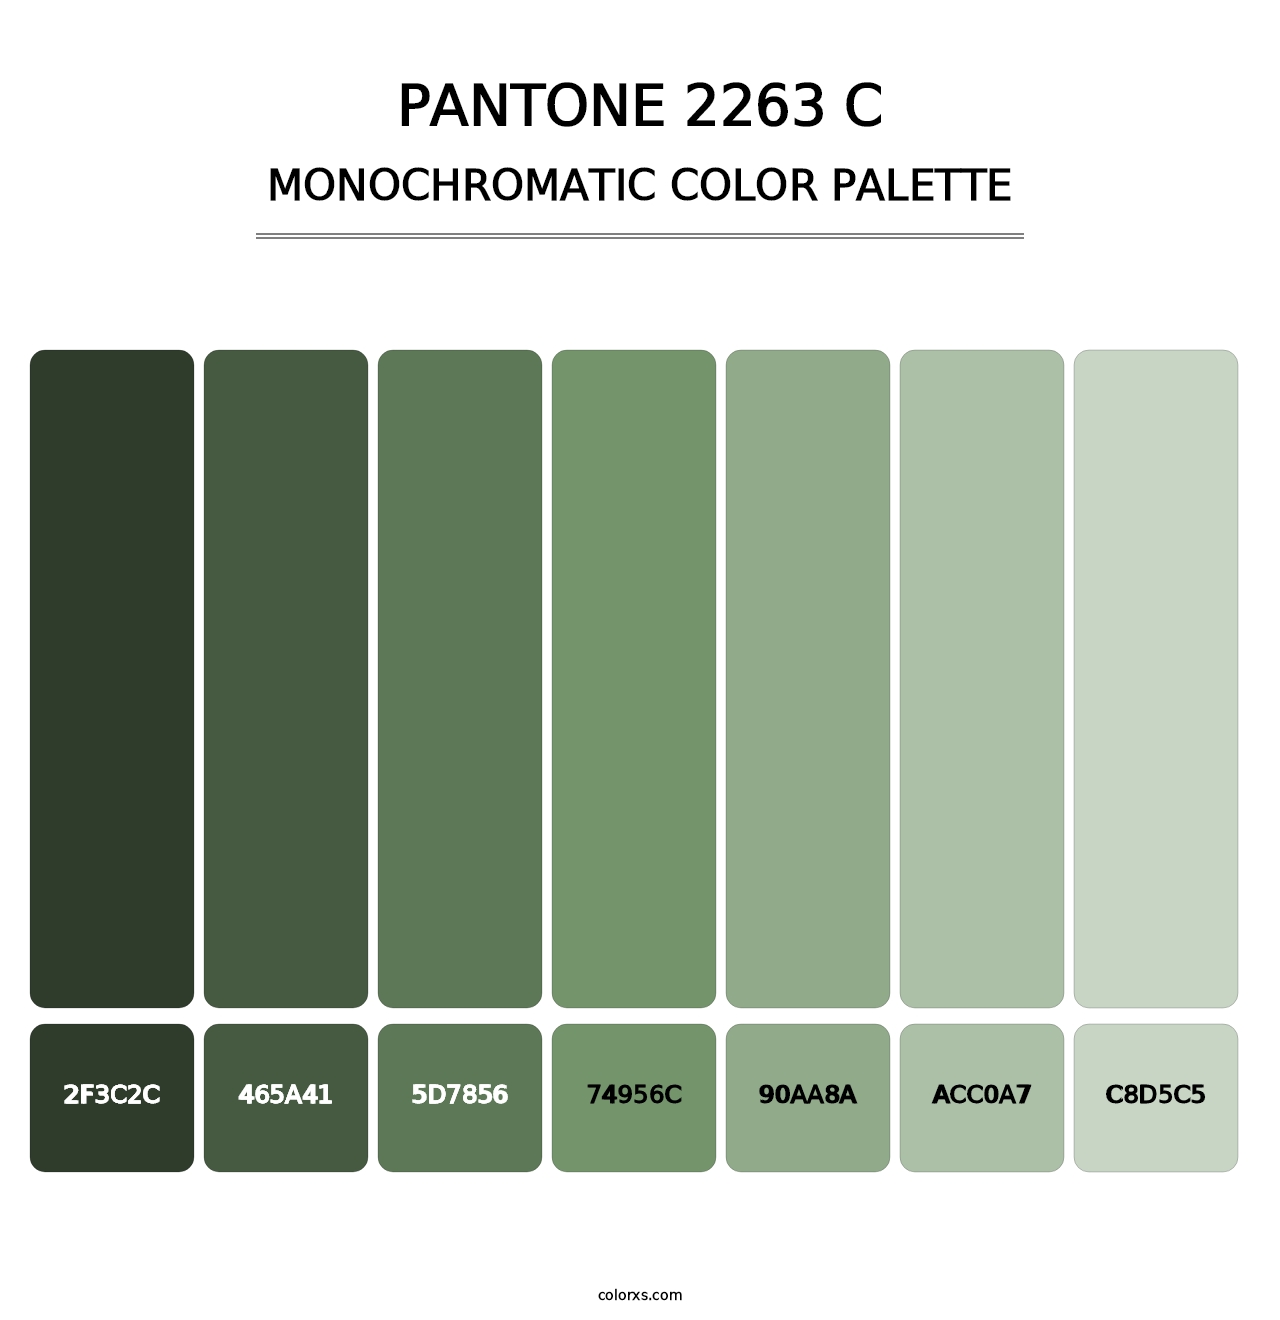 PANTONE 2263 C - Monochromatic Color Palette